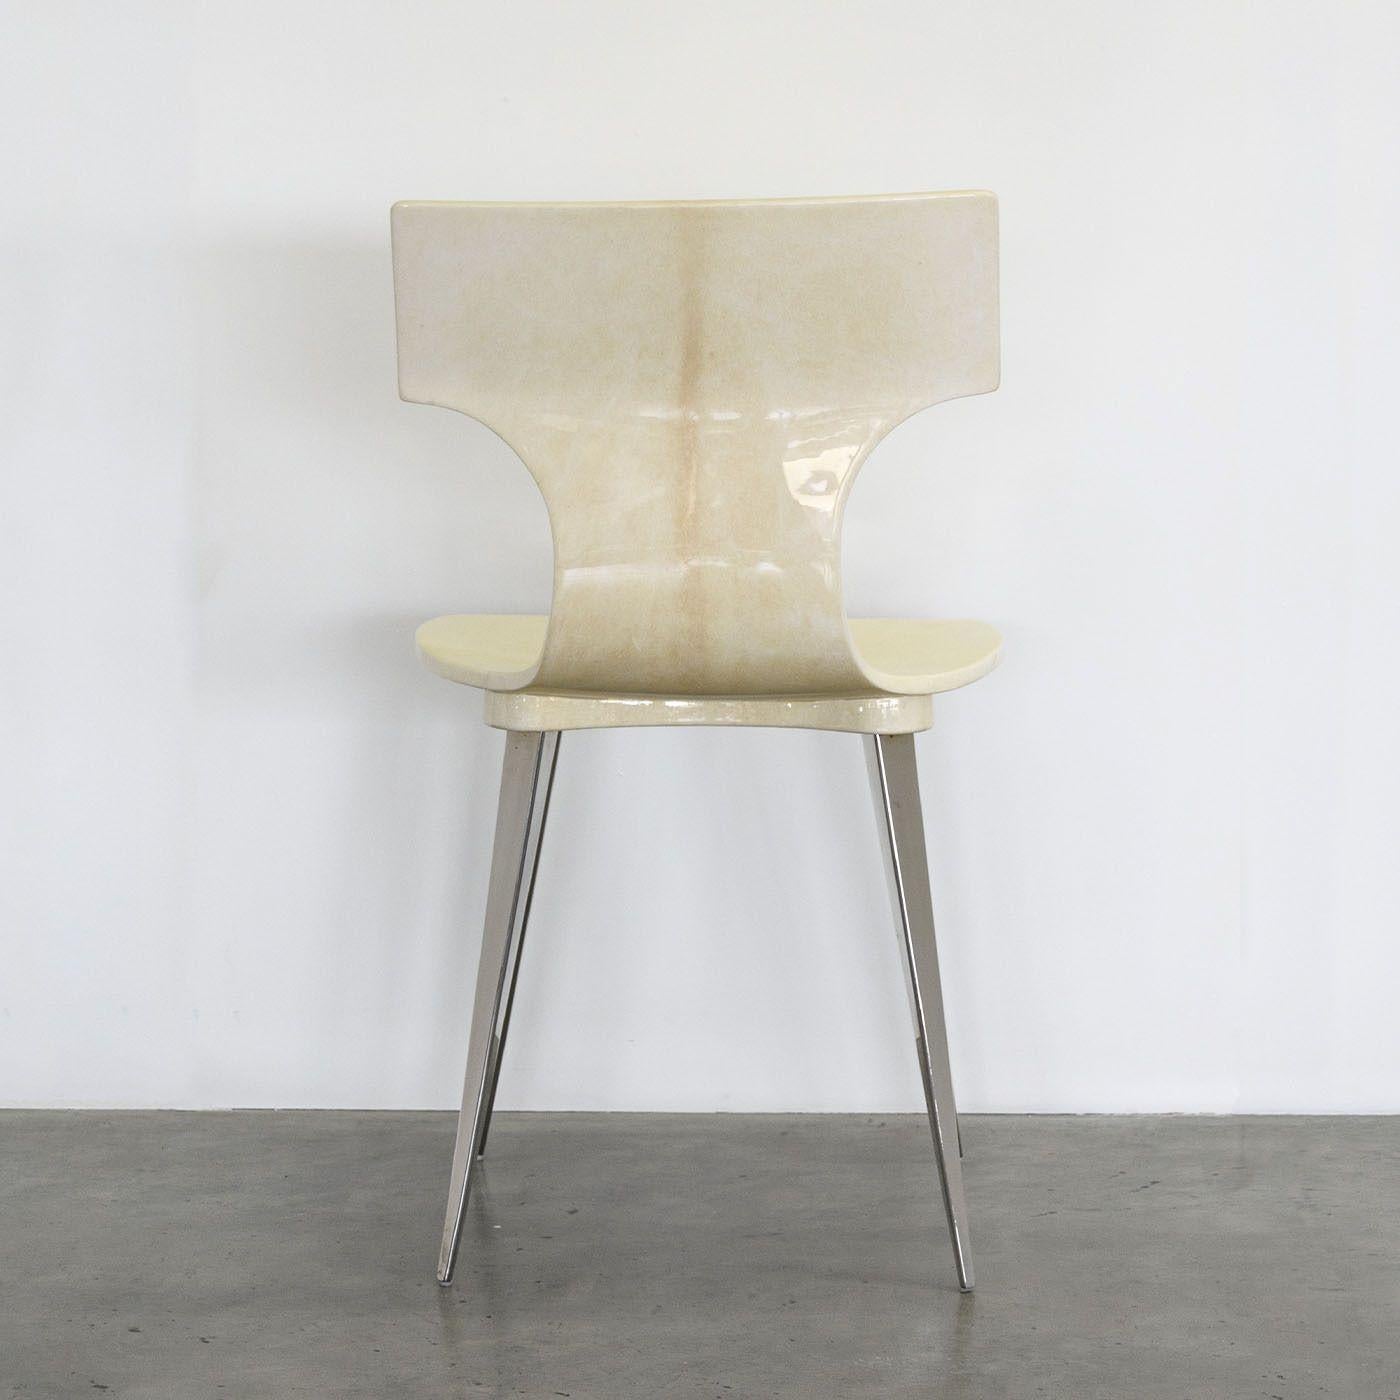 Dieser dynamische und edle Stuhl verfügt über eine robuste Schale und ein ergonomisches Design, das lang anhaltenden Komfort verspricht. Sein herausragendes Merkmal ist das hochwertige, natürliche Ziegenleder, das die Hülle vollständig umhüllt und